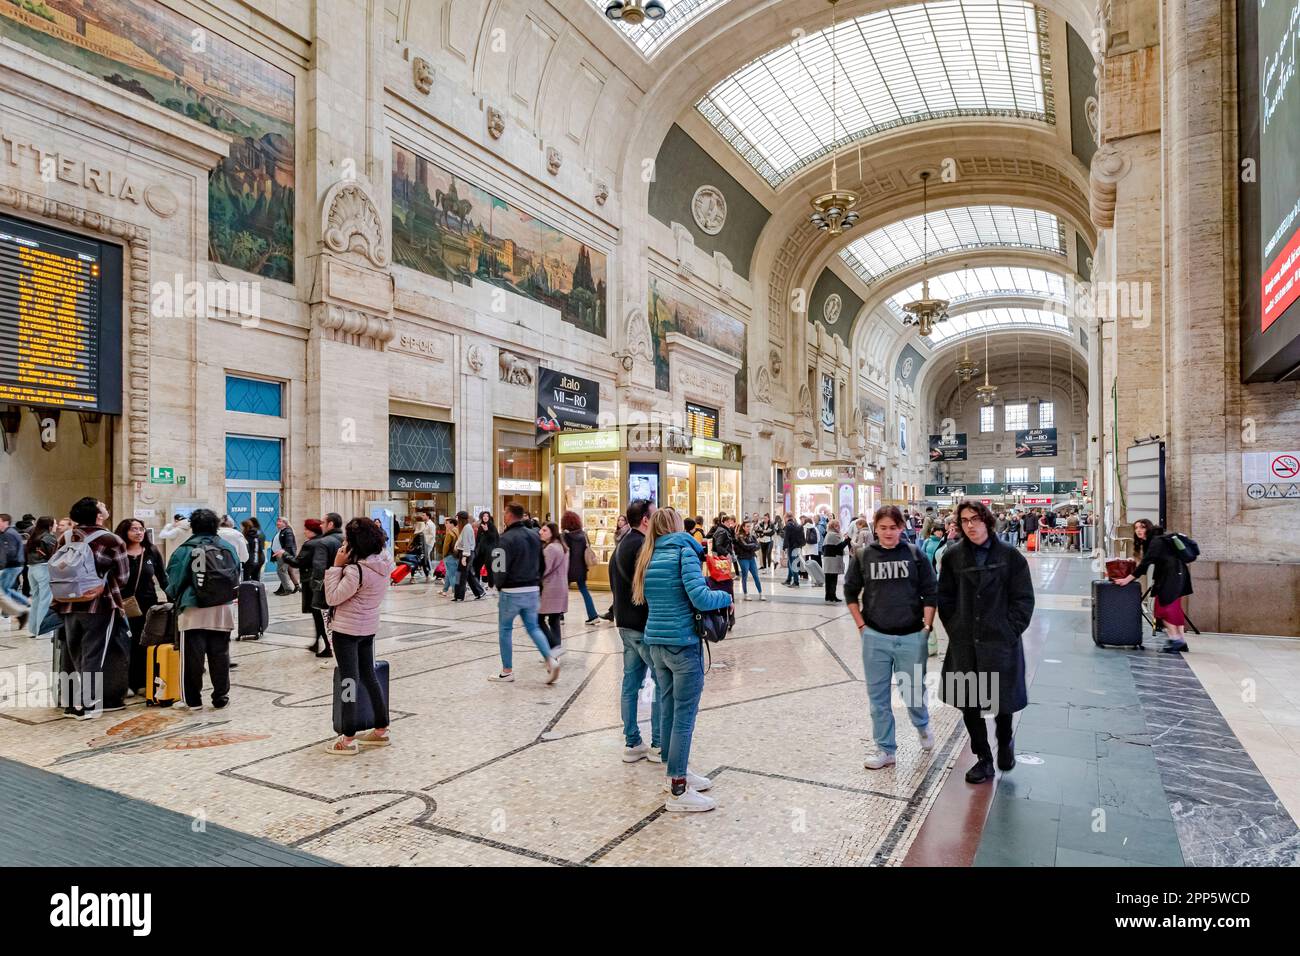 Personnes marchant à travers l'intérieur magnifique du hall d'entrée au rez-de-chaussée de la gare centrale de Milan, en Italie Banque D'Images